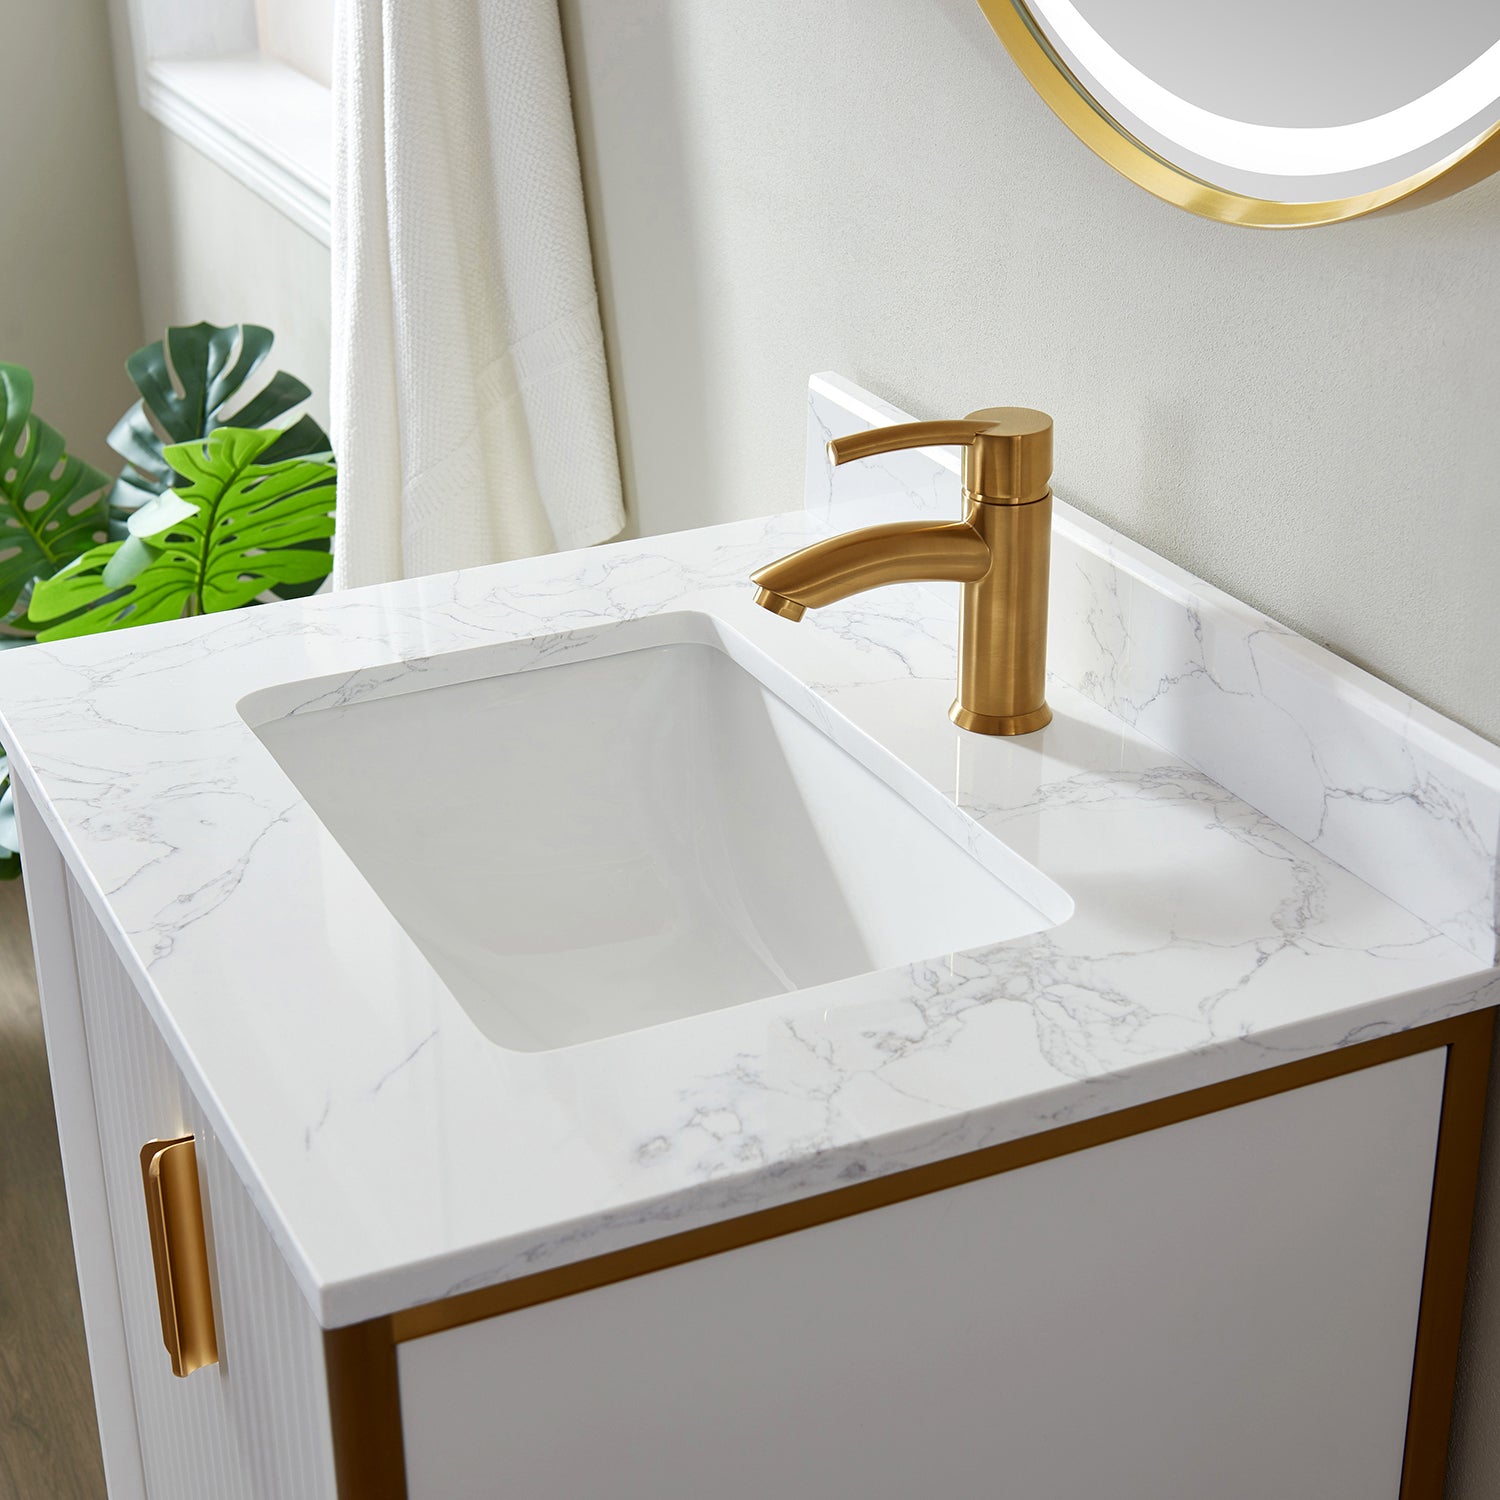 Vinnova Granada 24" Bathroom Vanity Set in White w/ White Composite Grain Stone Countertop | 736024-WH-GW